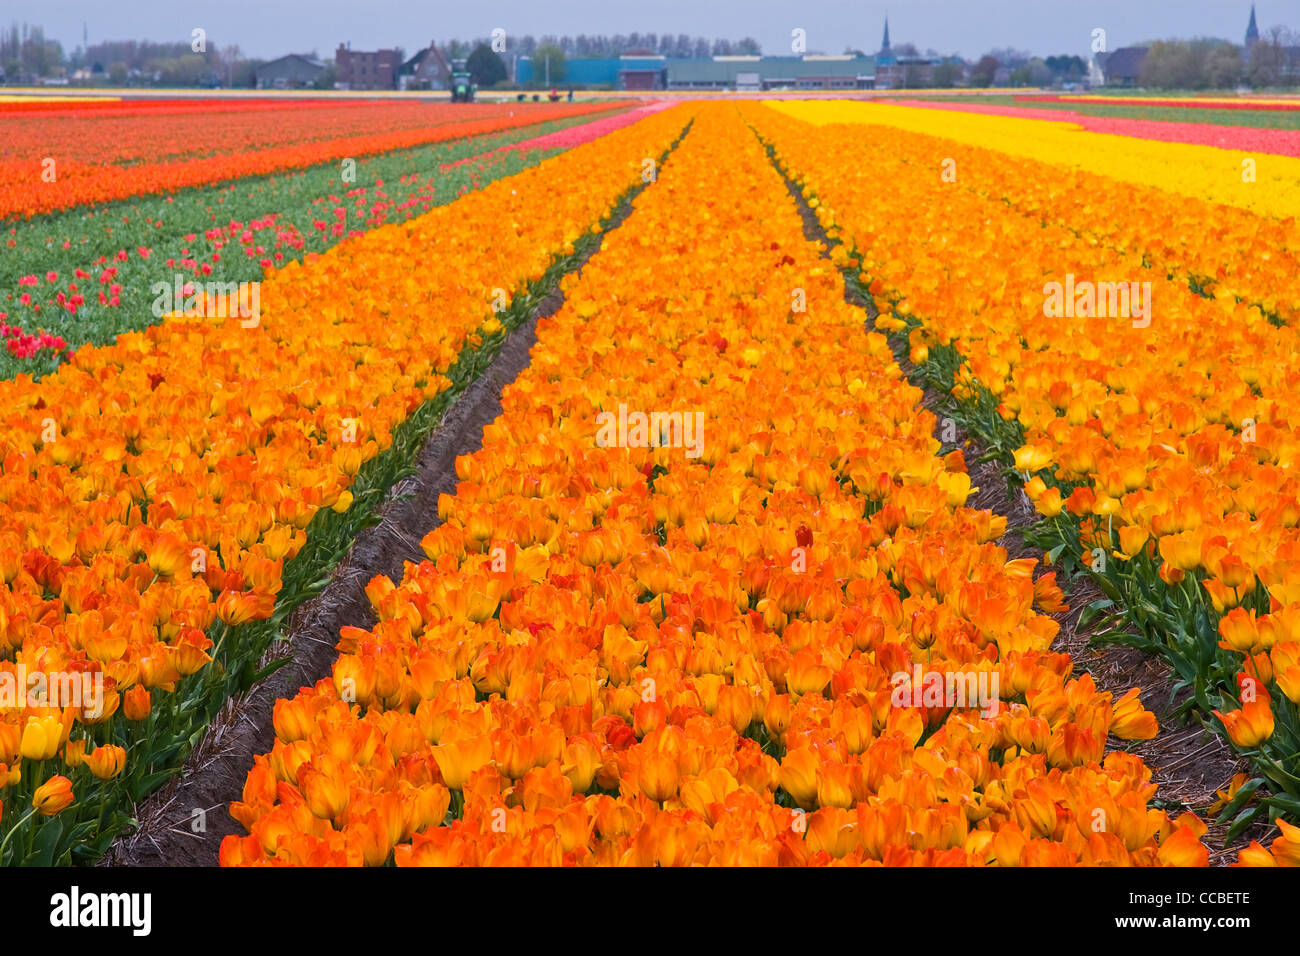 Champs de tulipes aux Pays-Bas au printemps - les champs d'orange, rouge et jaune à l'horizon de tulipes Banque D'Images